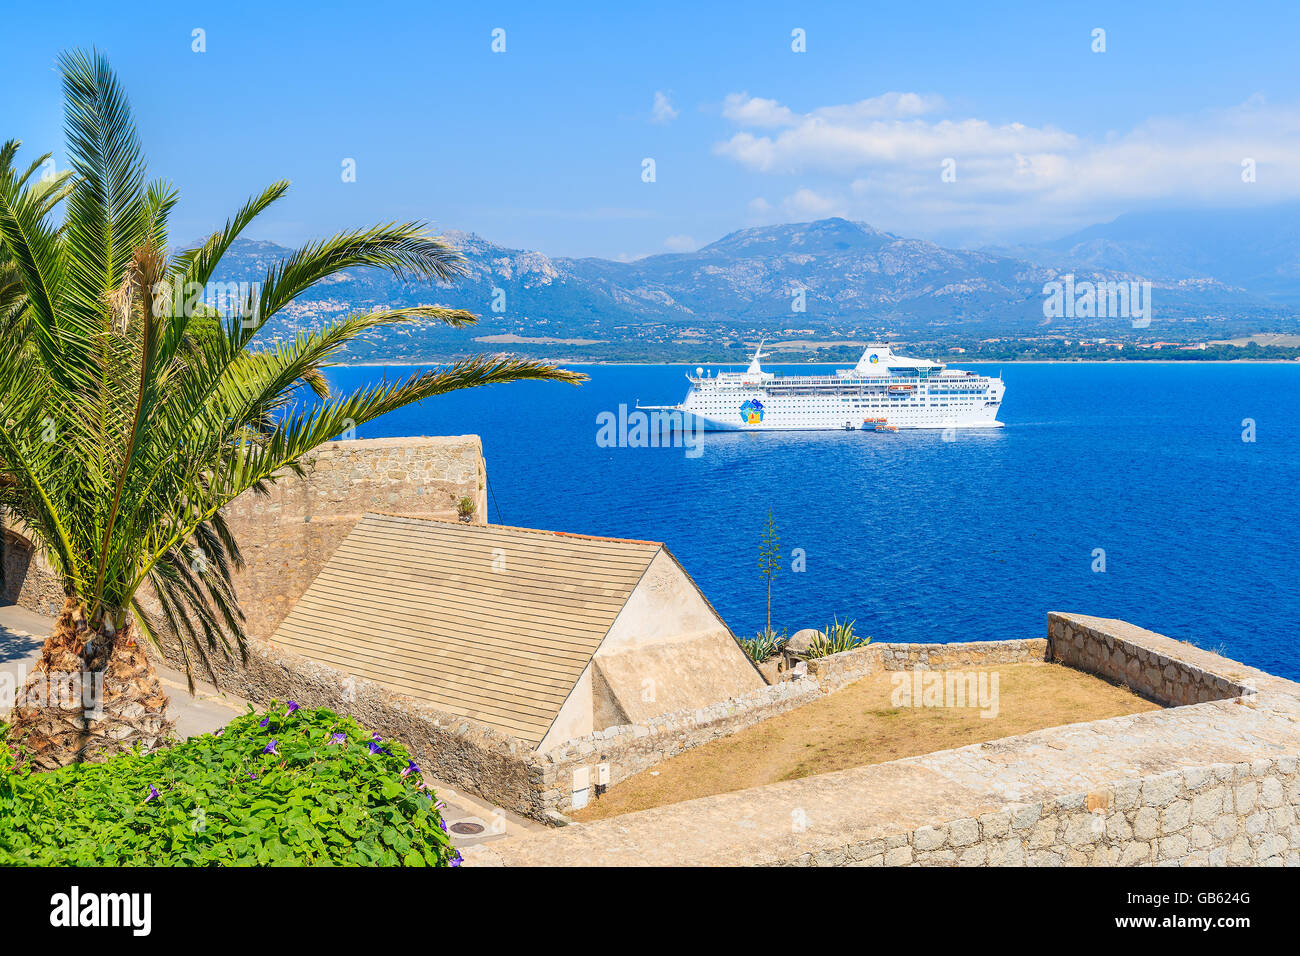 CALVI, Isola di Corsica - giu 28, 2015: vista della nave da crociera di ormeggio sul blu del mare nella baia di Calvi. Calvi ha cittadella medioevale che è Foto Stock